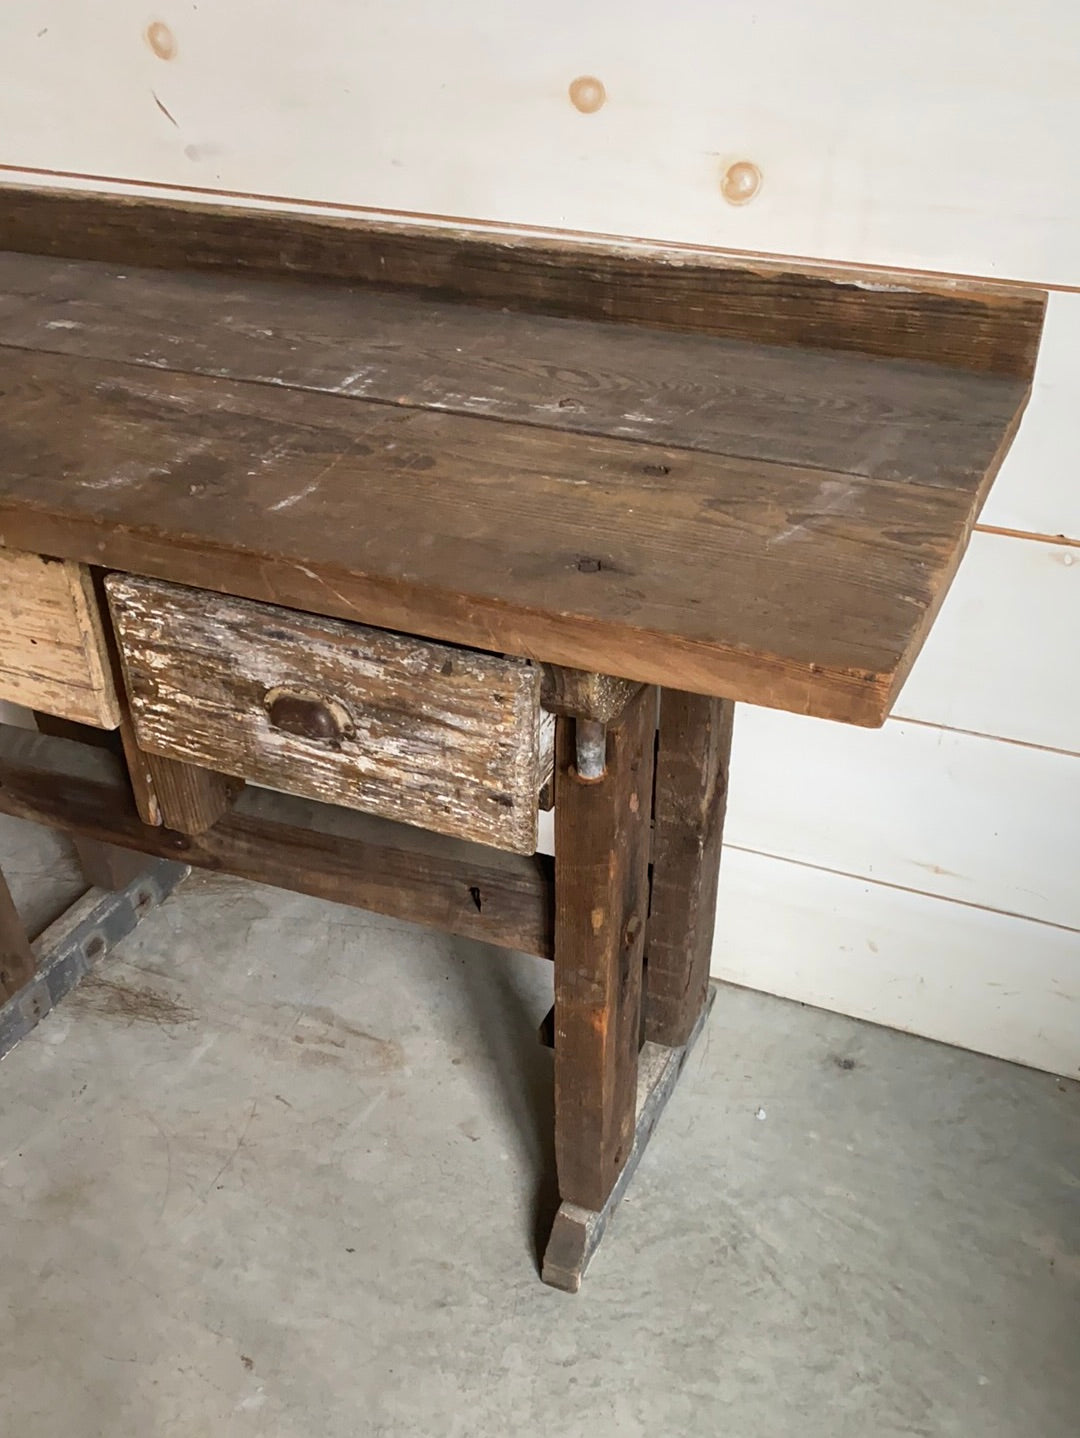 Salvaged Wood Workbench